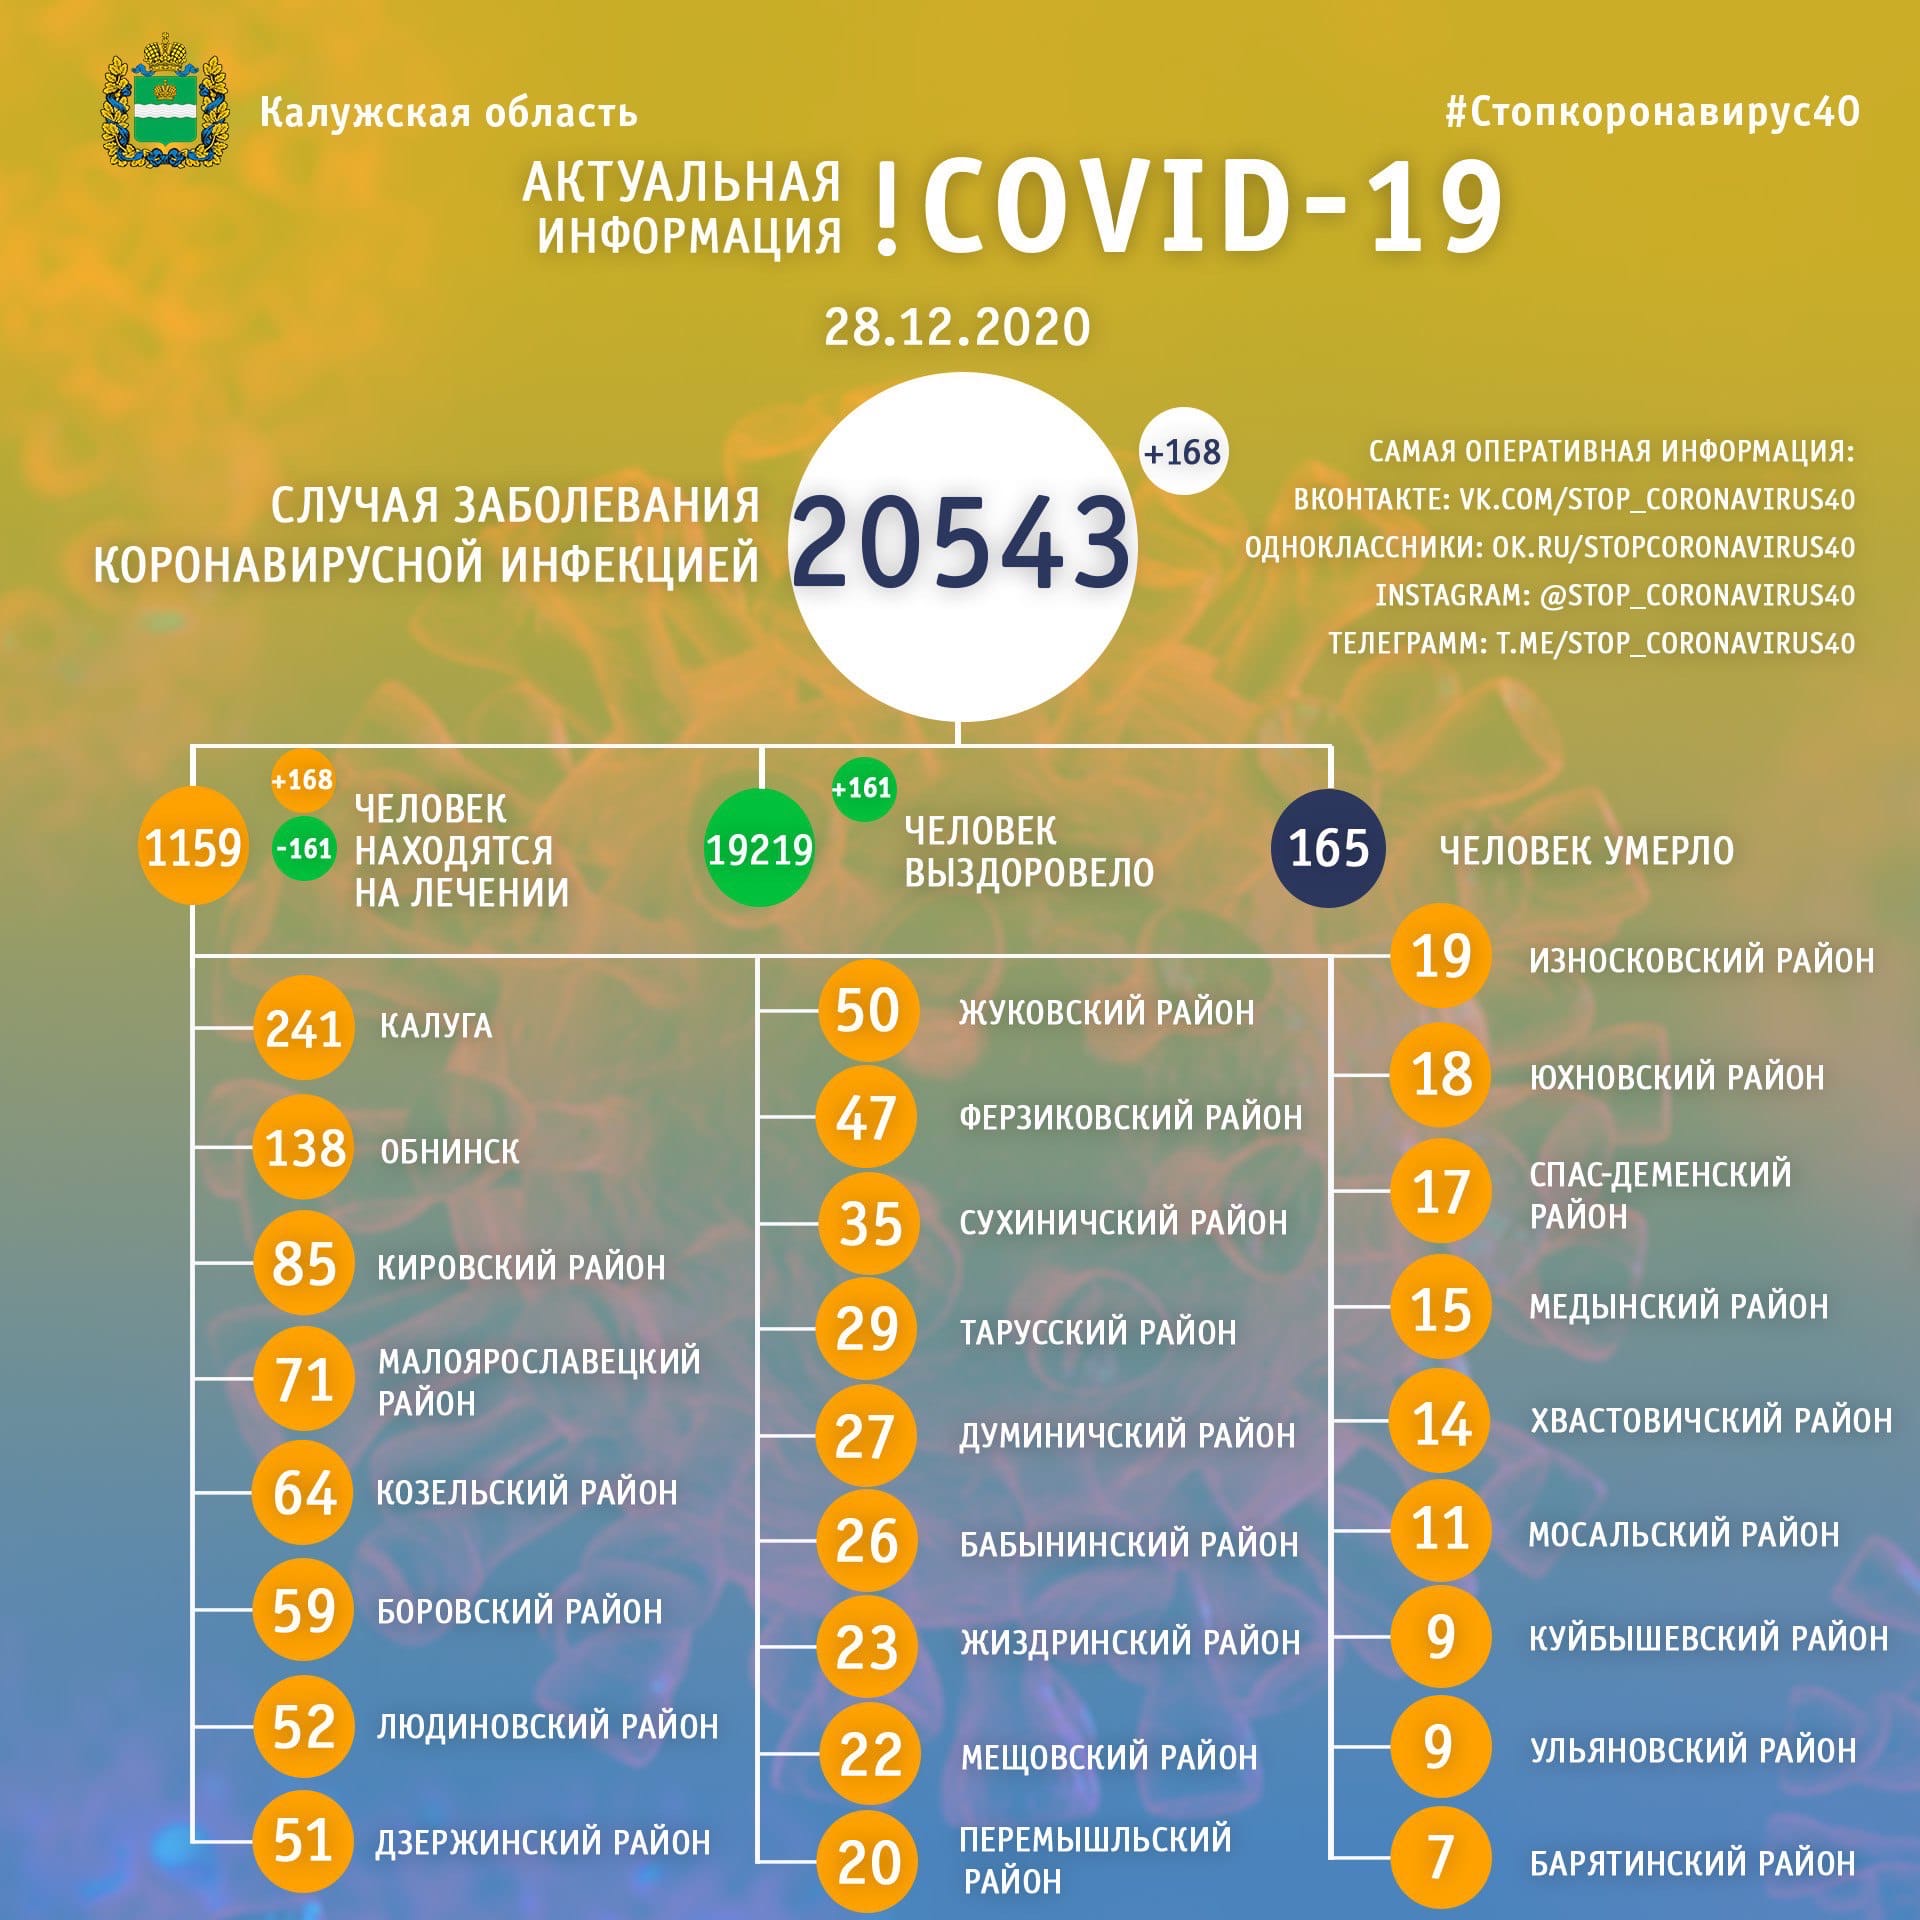 Официальная статистика по коронавирусу в Калужской области на 28 декабря 2020 года.